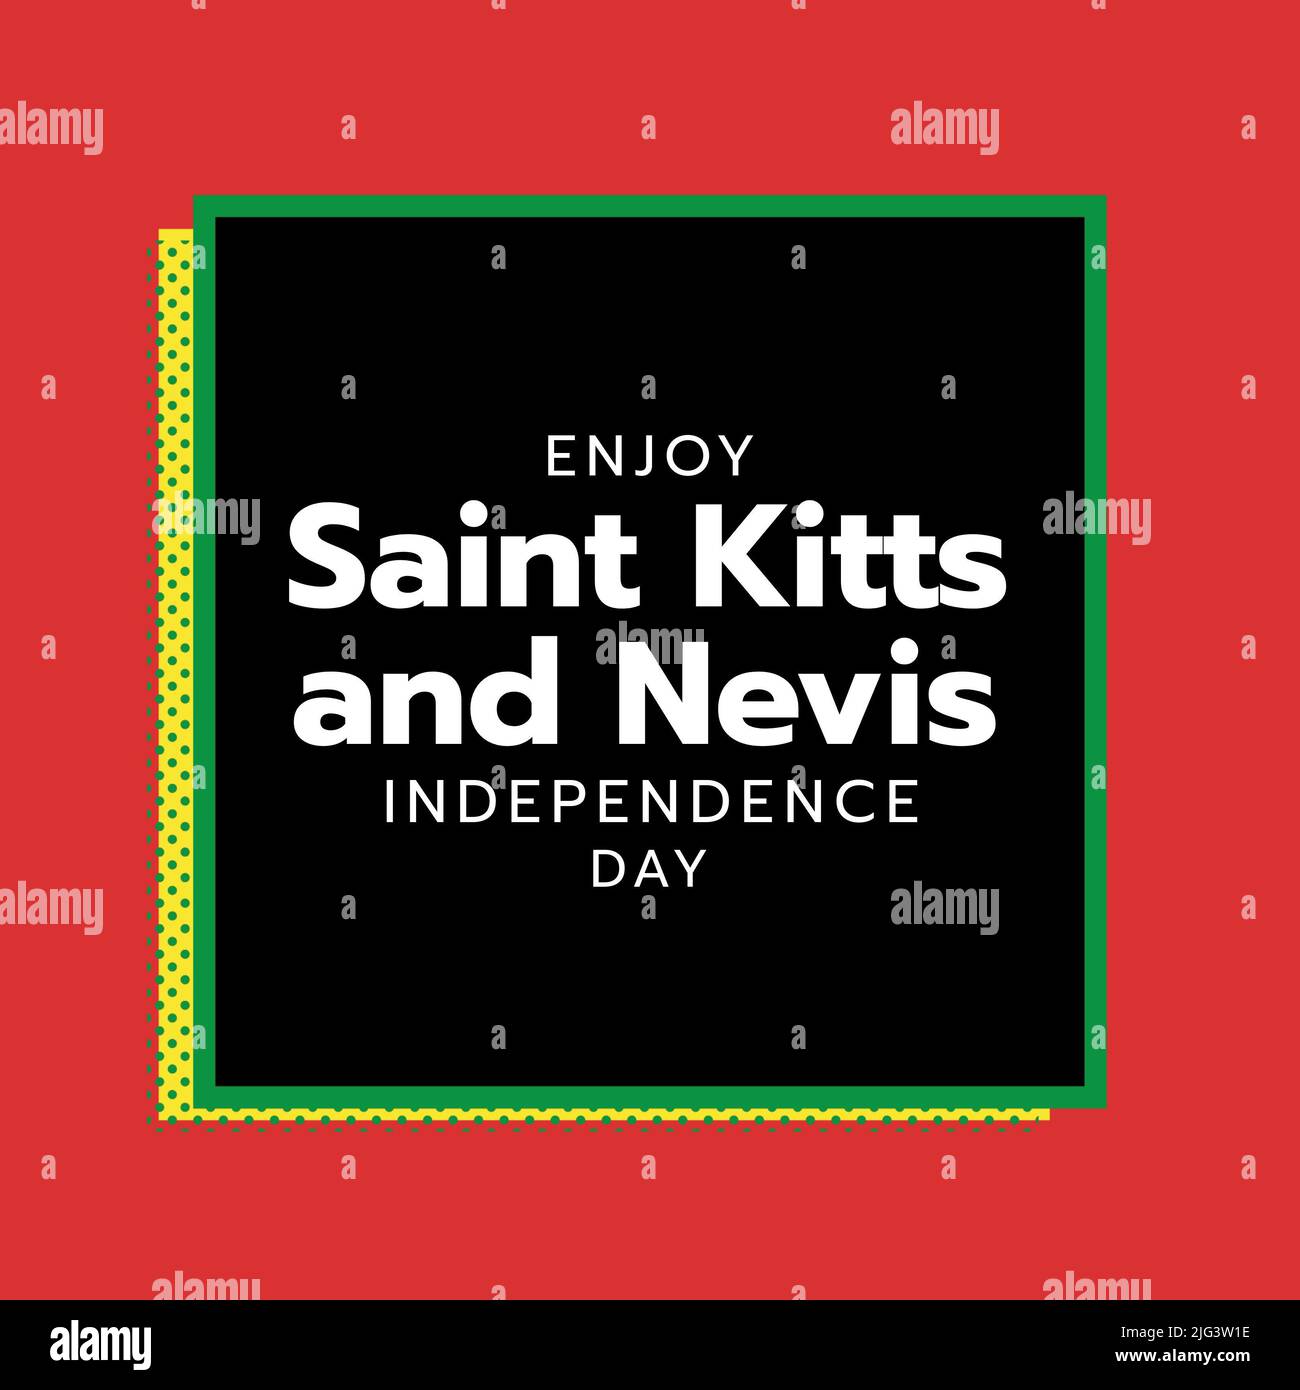 Immagine del giorno d'indipendenza di saint kitts e nevis in una piazza nera su sfondo rosso Foto Stock